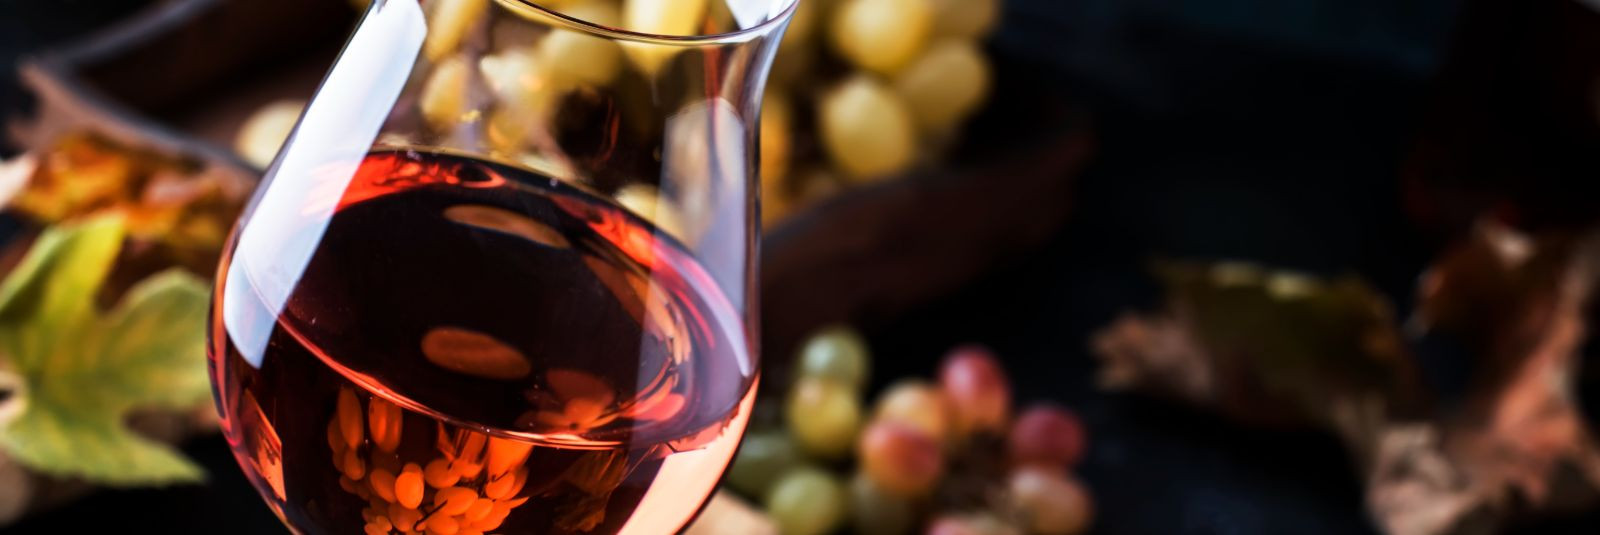 Tere tulemast Gruusia maitsete imelisse maailma, kus pakume oma klientidele võimalust avastada mõnusaid Gruusia veine ja eksklusiivseid maitseaineid, mis rikast